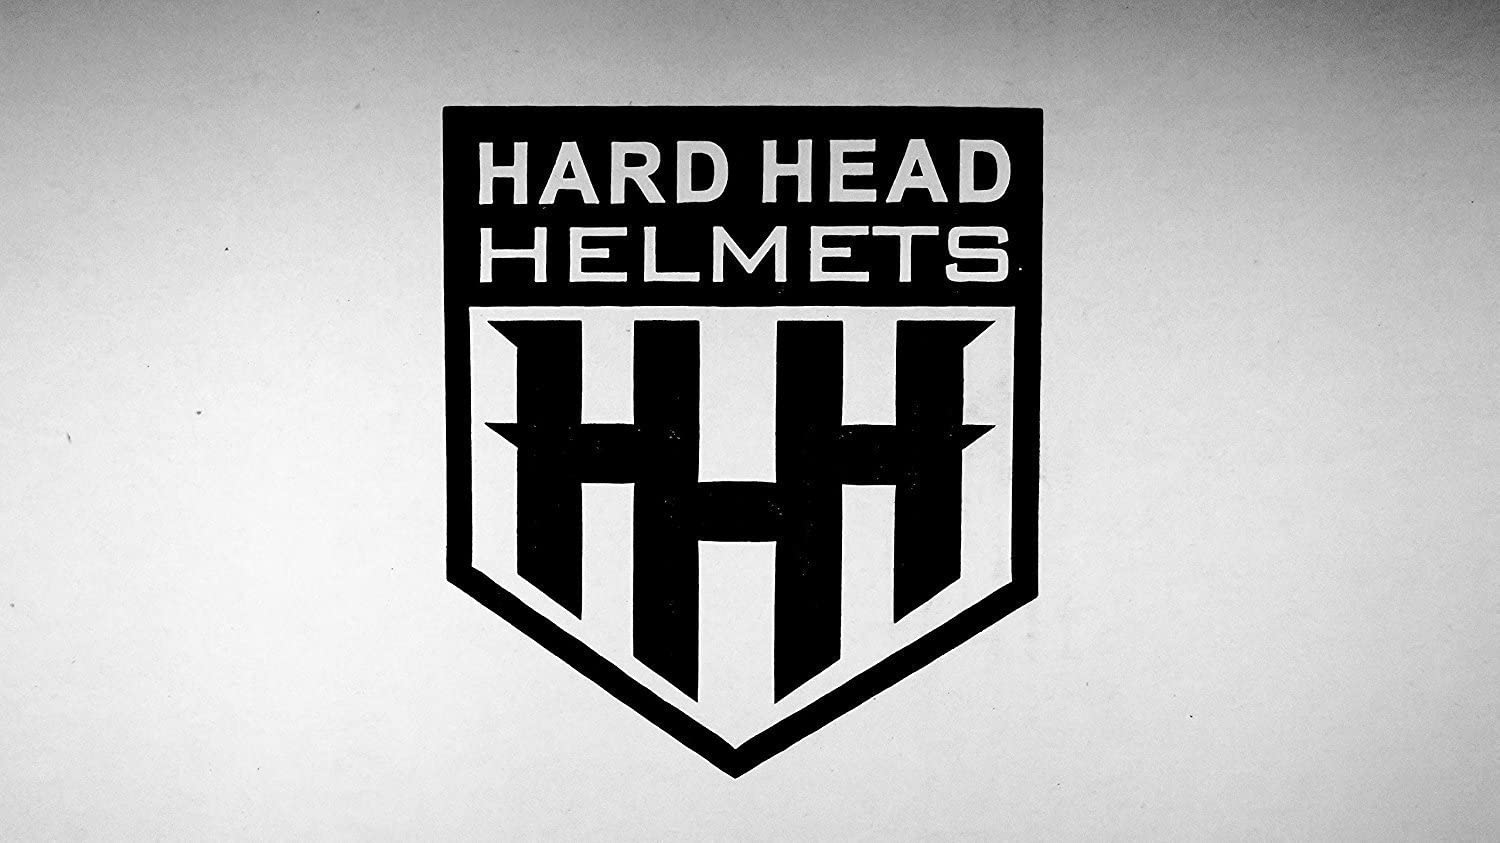 HHH DOT Youth & Kids Helmet for Dirtbike ATV Motocross MX Offroad Motorcyle Street bike Snowmobile Helmet with VISOR-Matte Black-USA